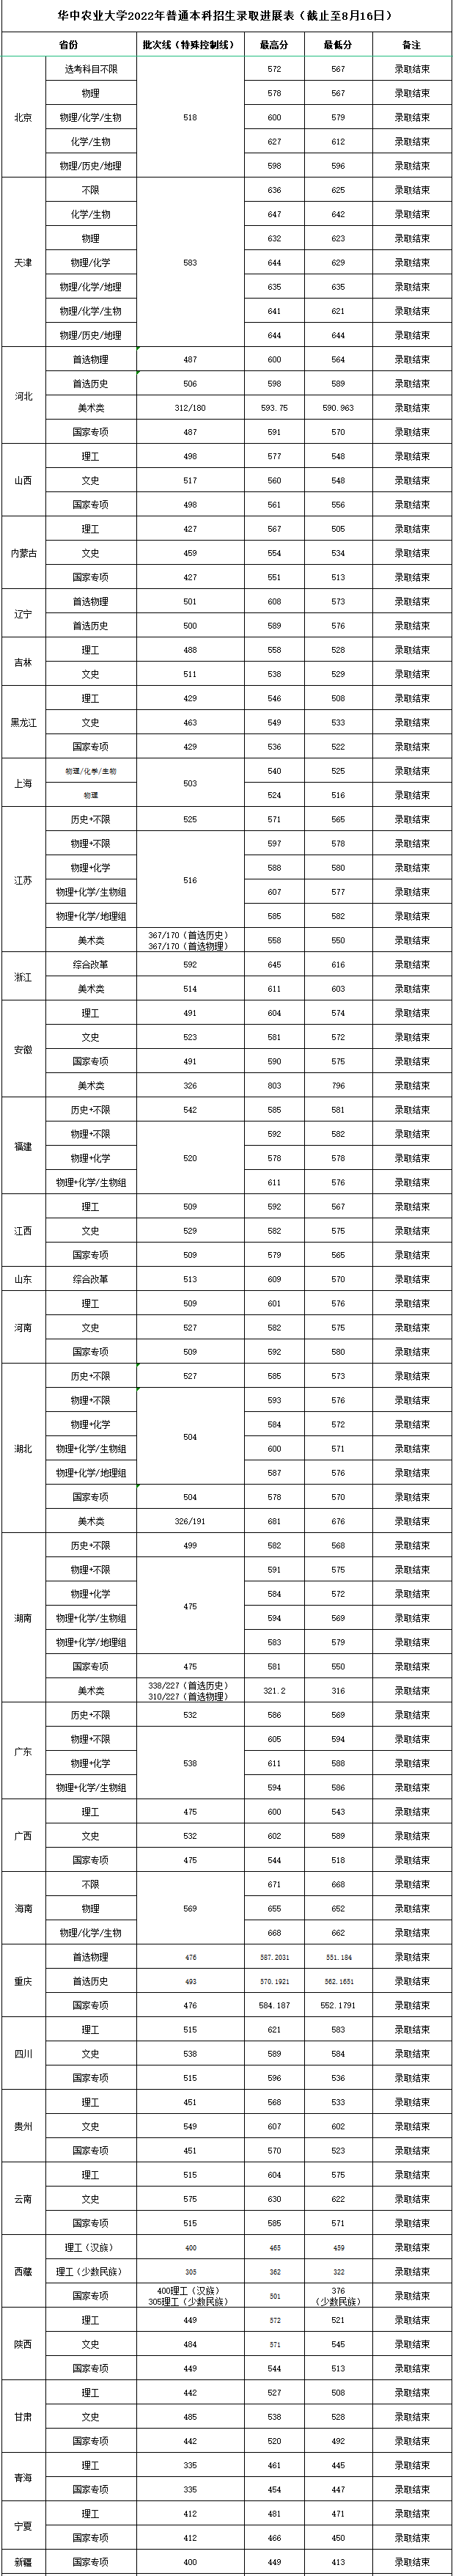 华中农业大学2022年各省（市、区）录取分数情况统计